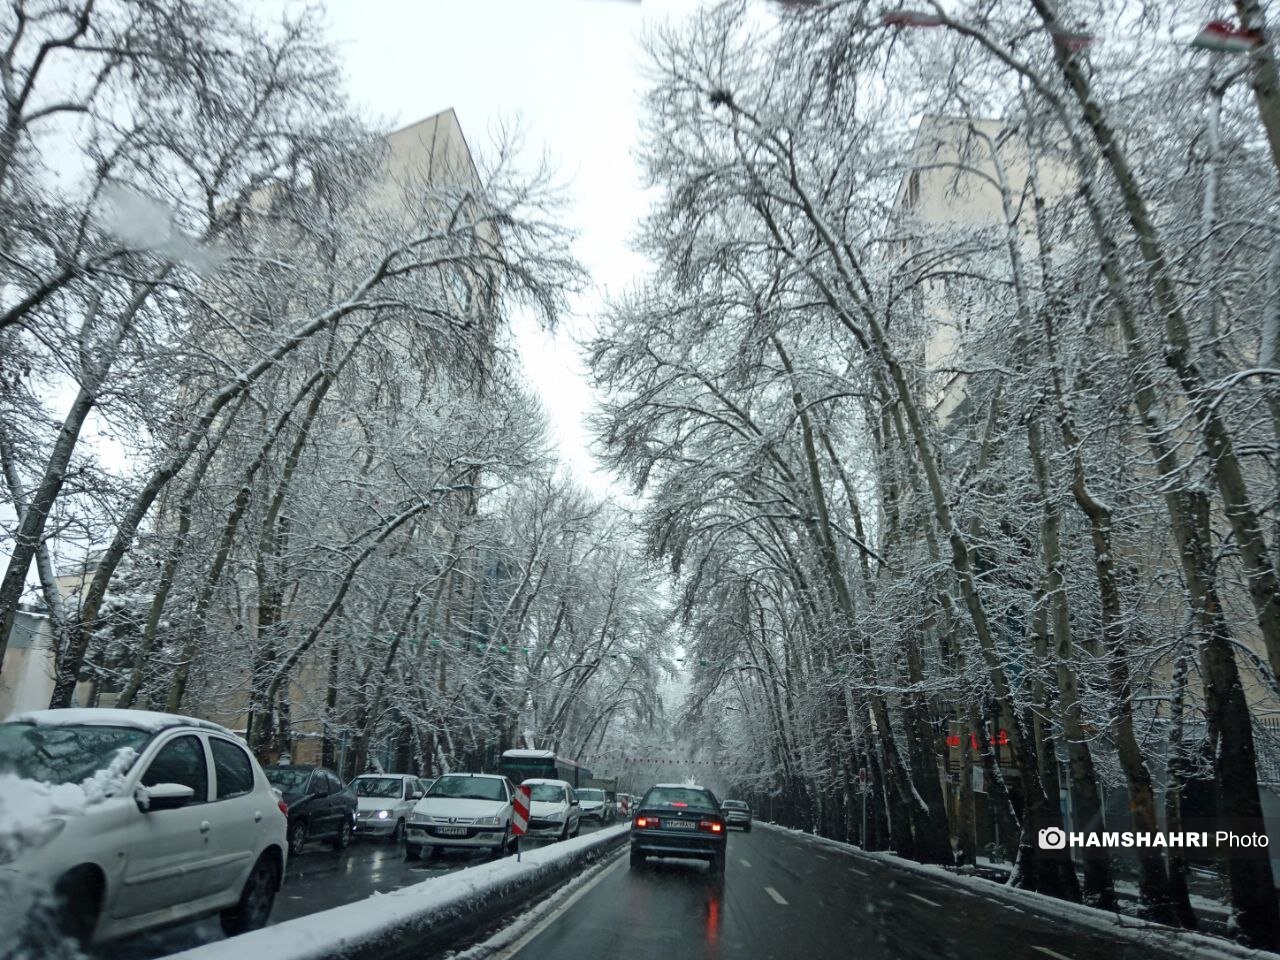 زیباترین حالت خیابان ولیعصر تهران با درختان پر از برف | تصاویر